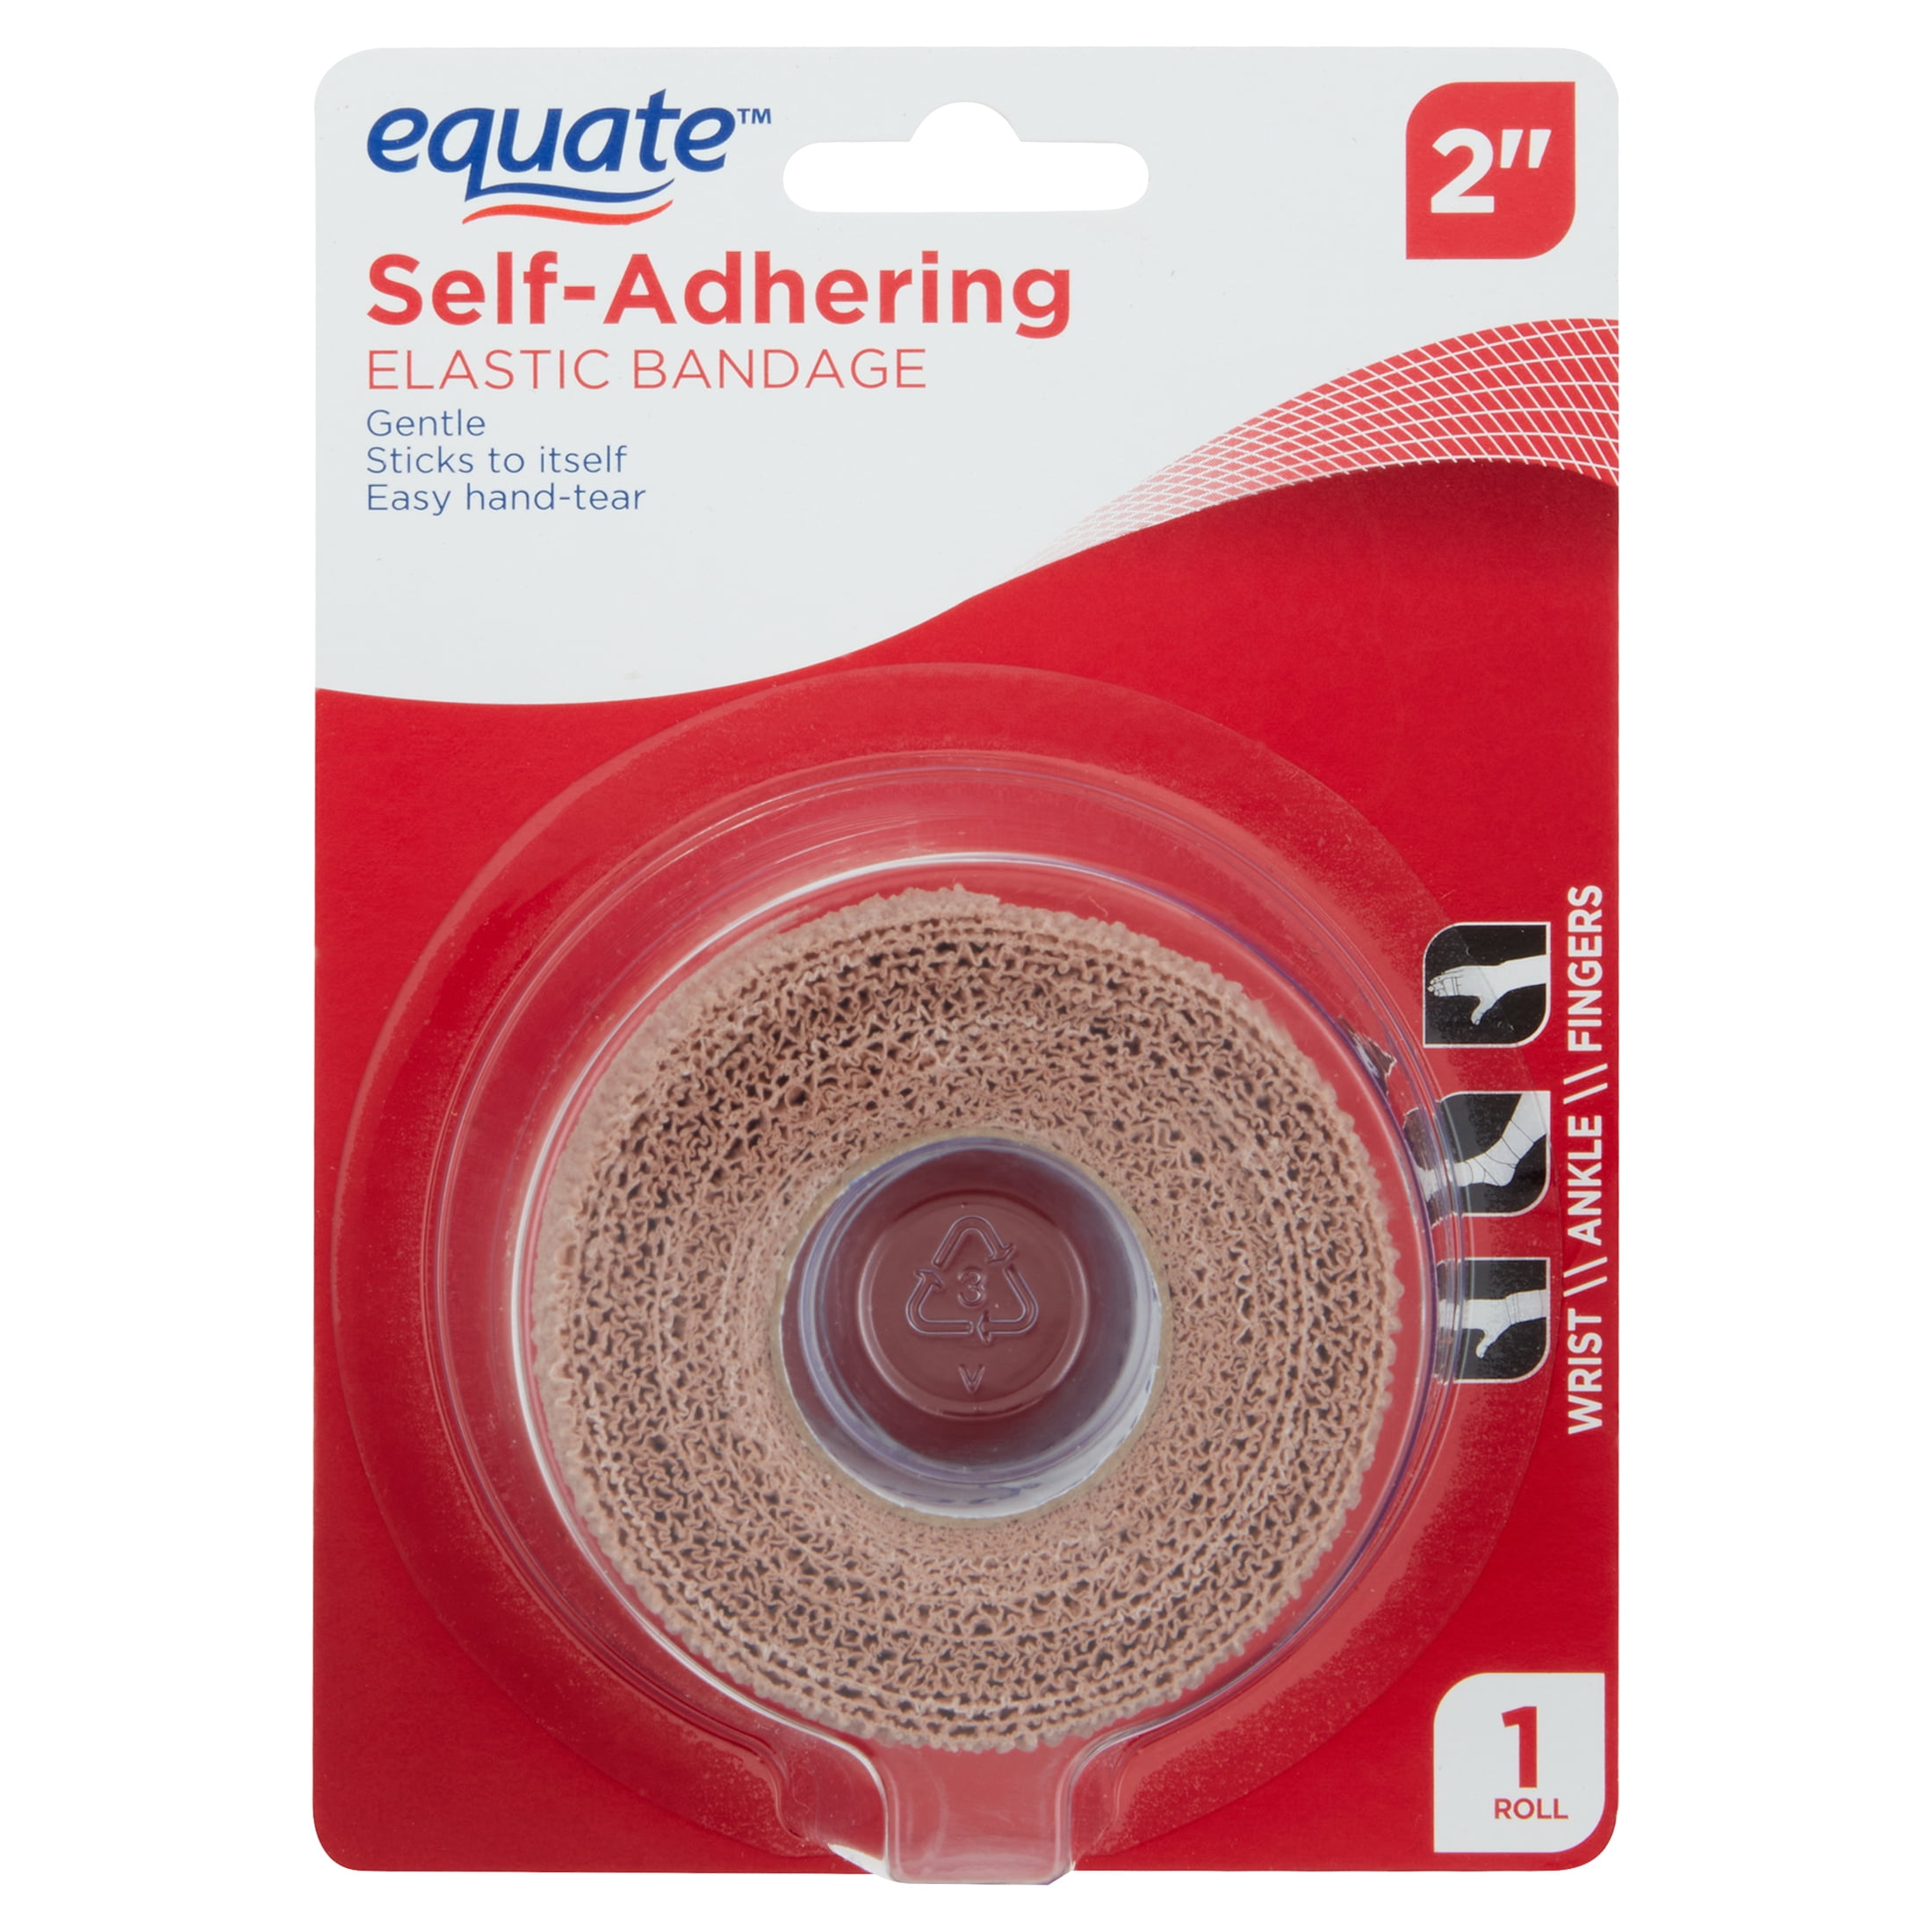 Equate Self-Adhering Elastic Bandage, 2"